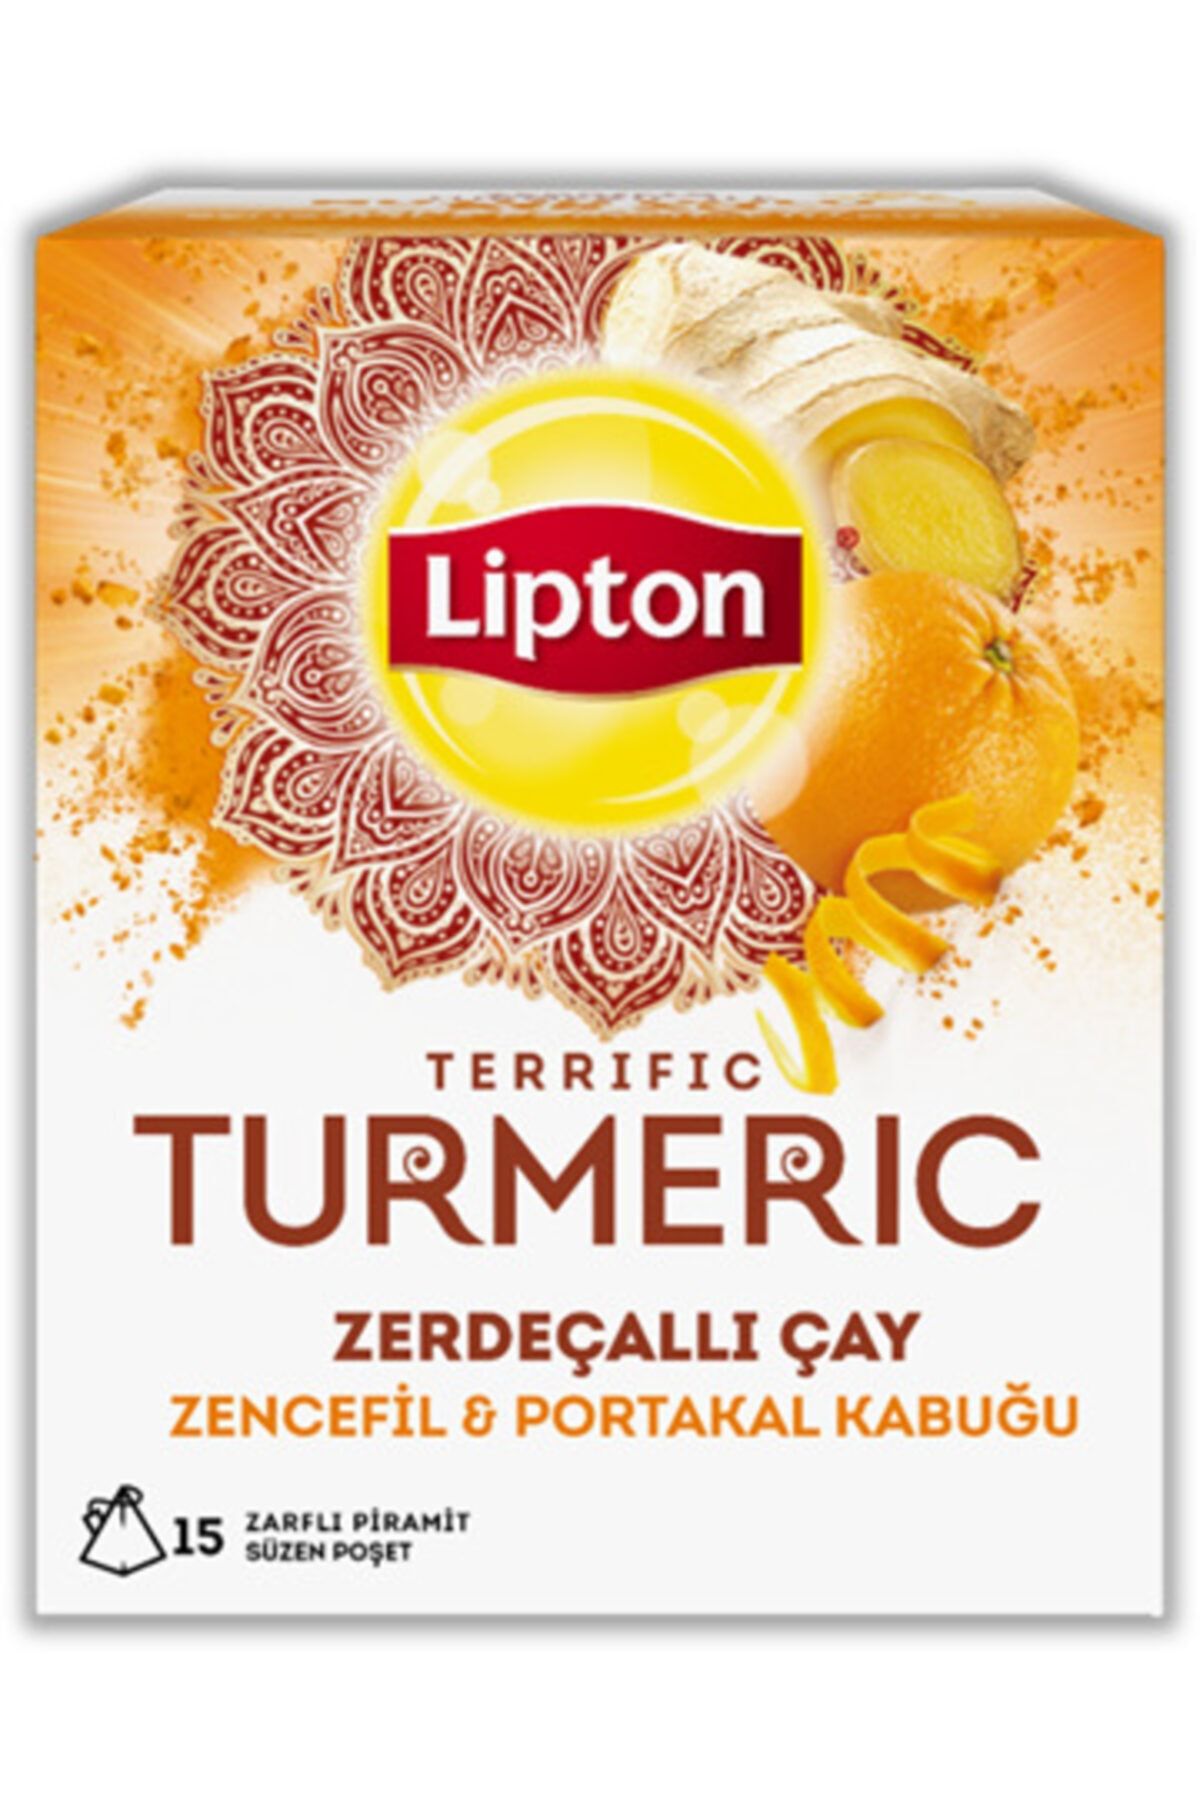 Lipton Turmeric Bardak Poşet Çay 15'Li 22.5 gr